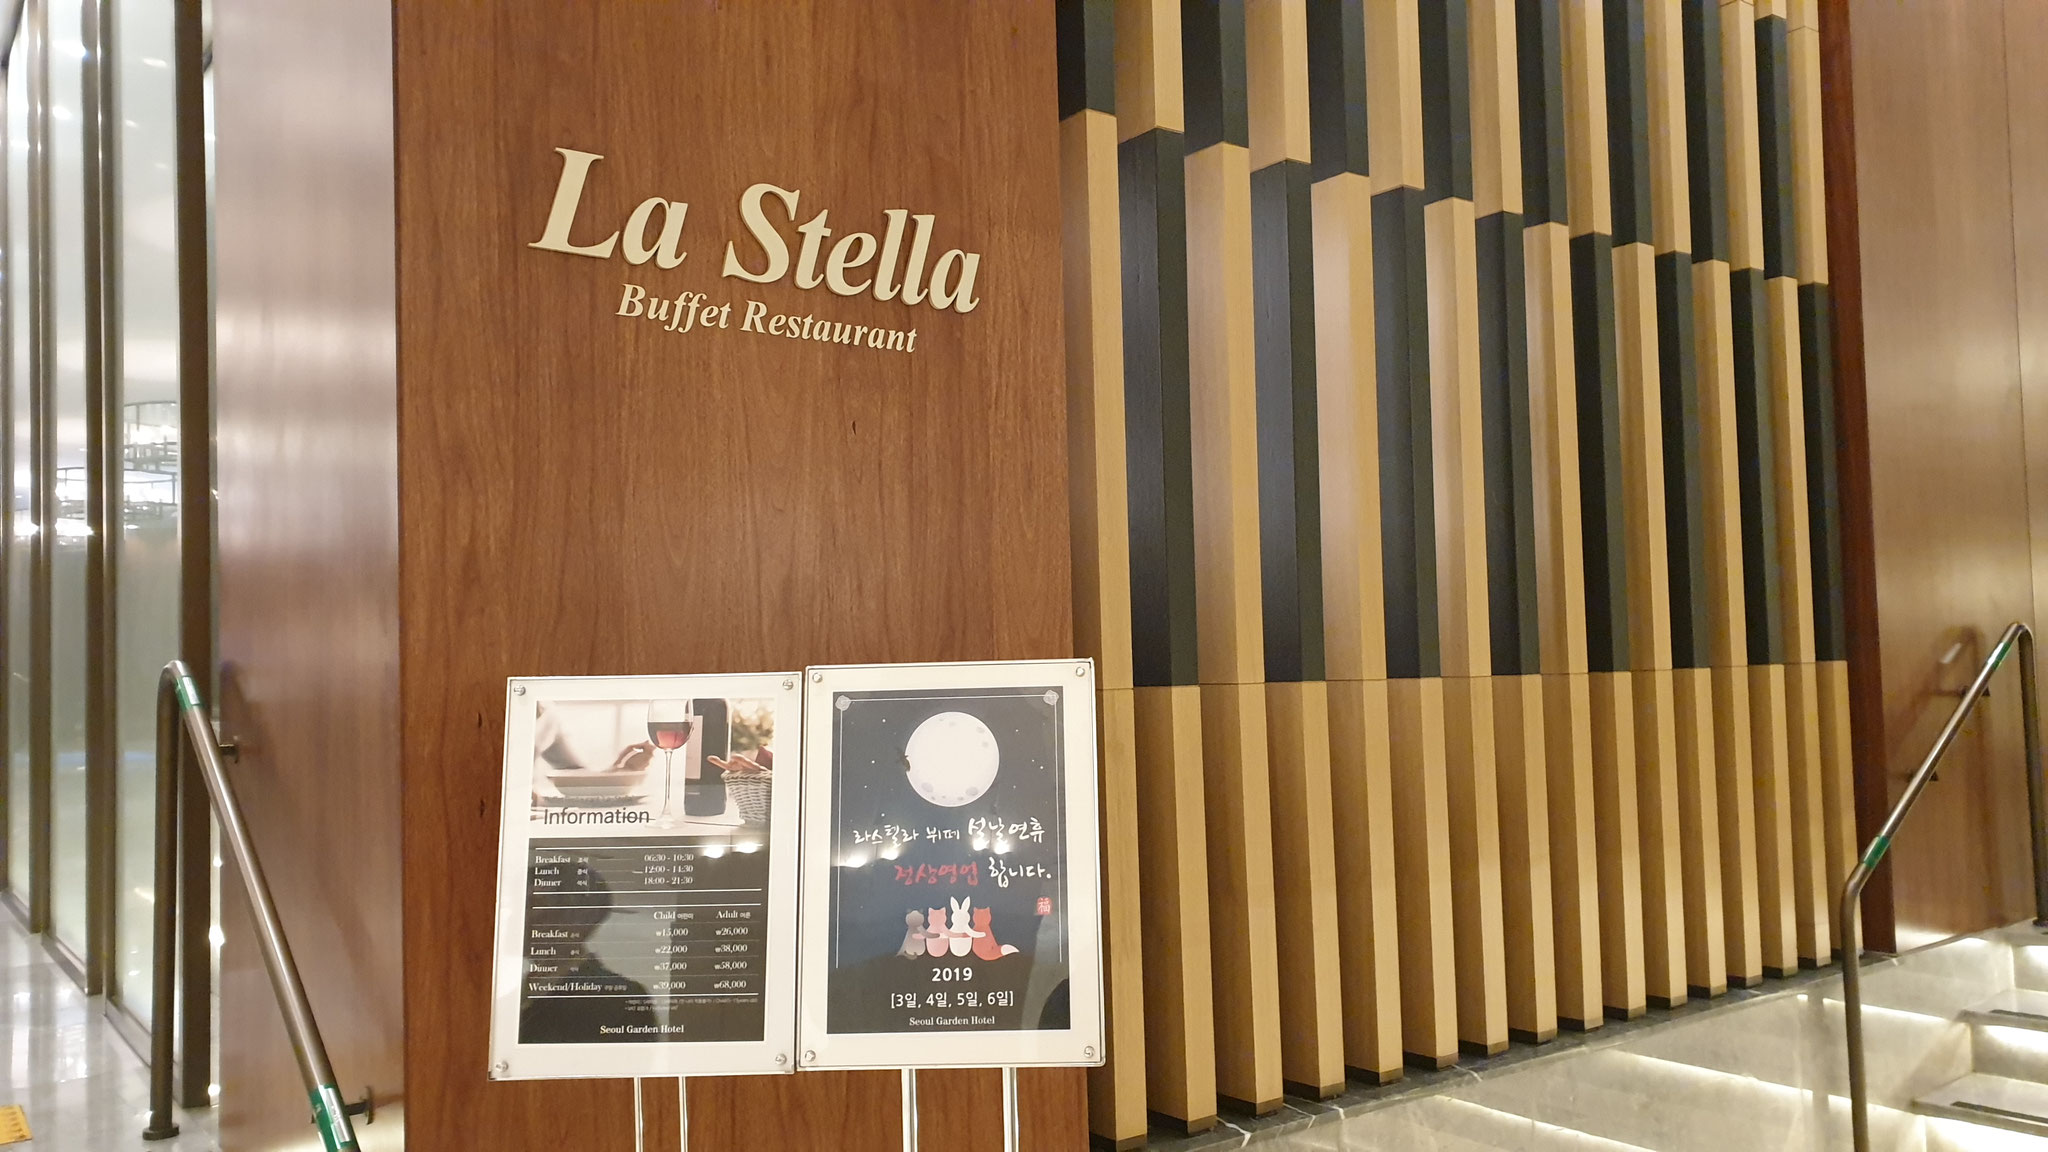 2019年1月29日(土): ローン総会・新年会 @La Stella in Best Western Premier Seoul Garden Hotel (麻浦駅近く)